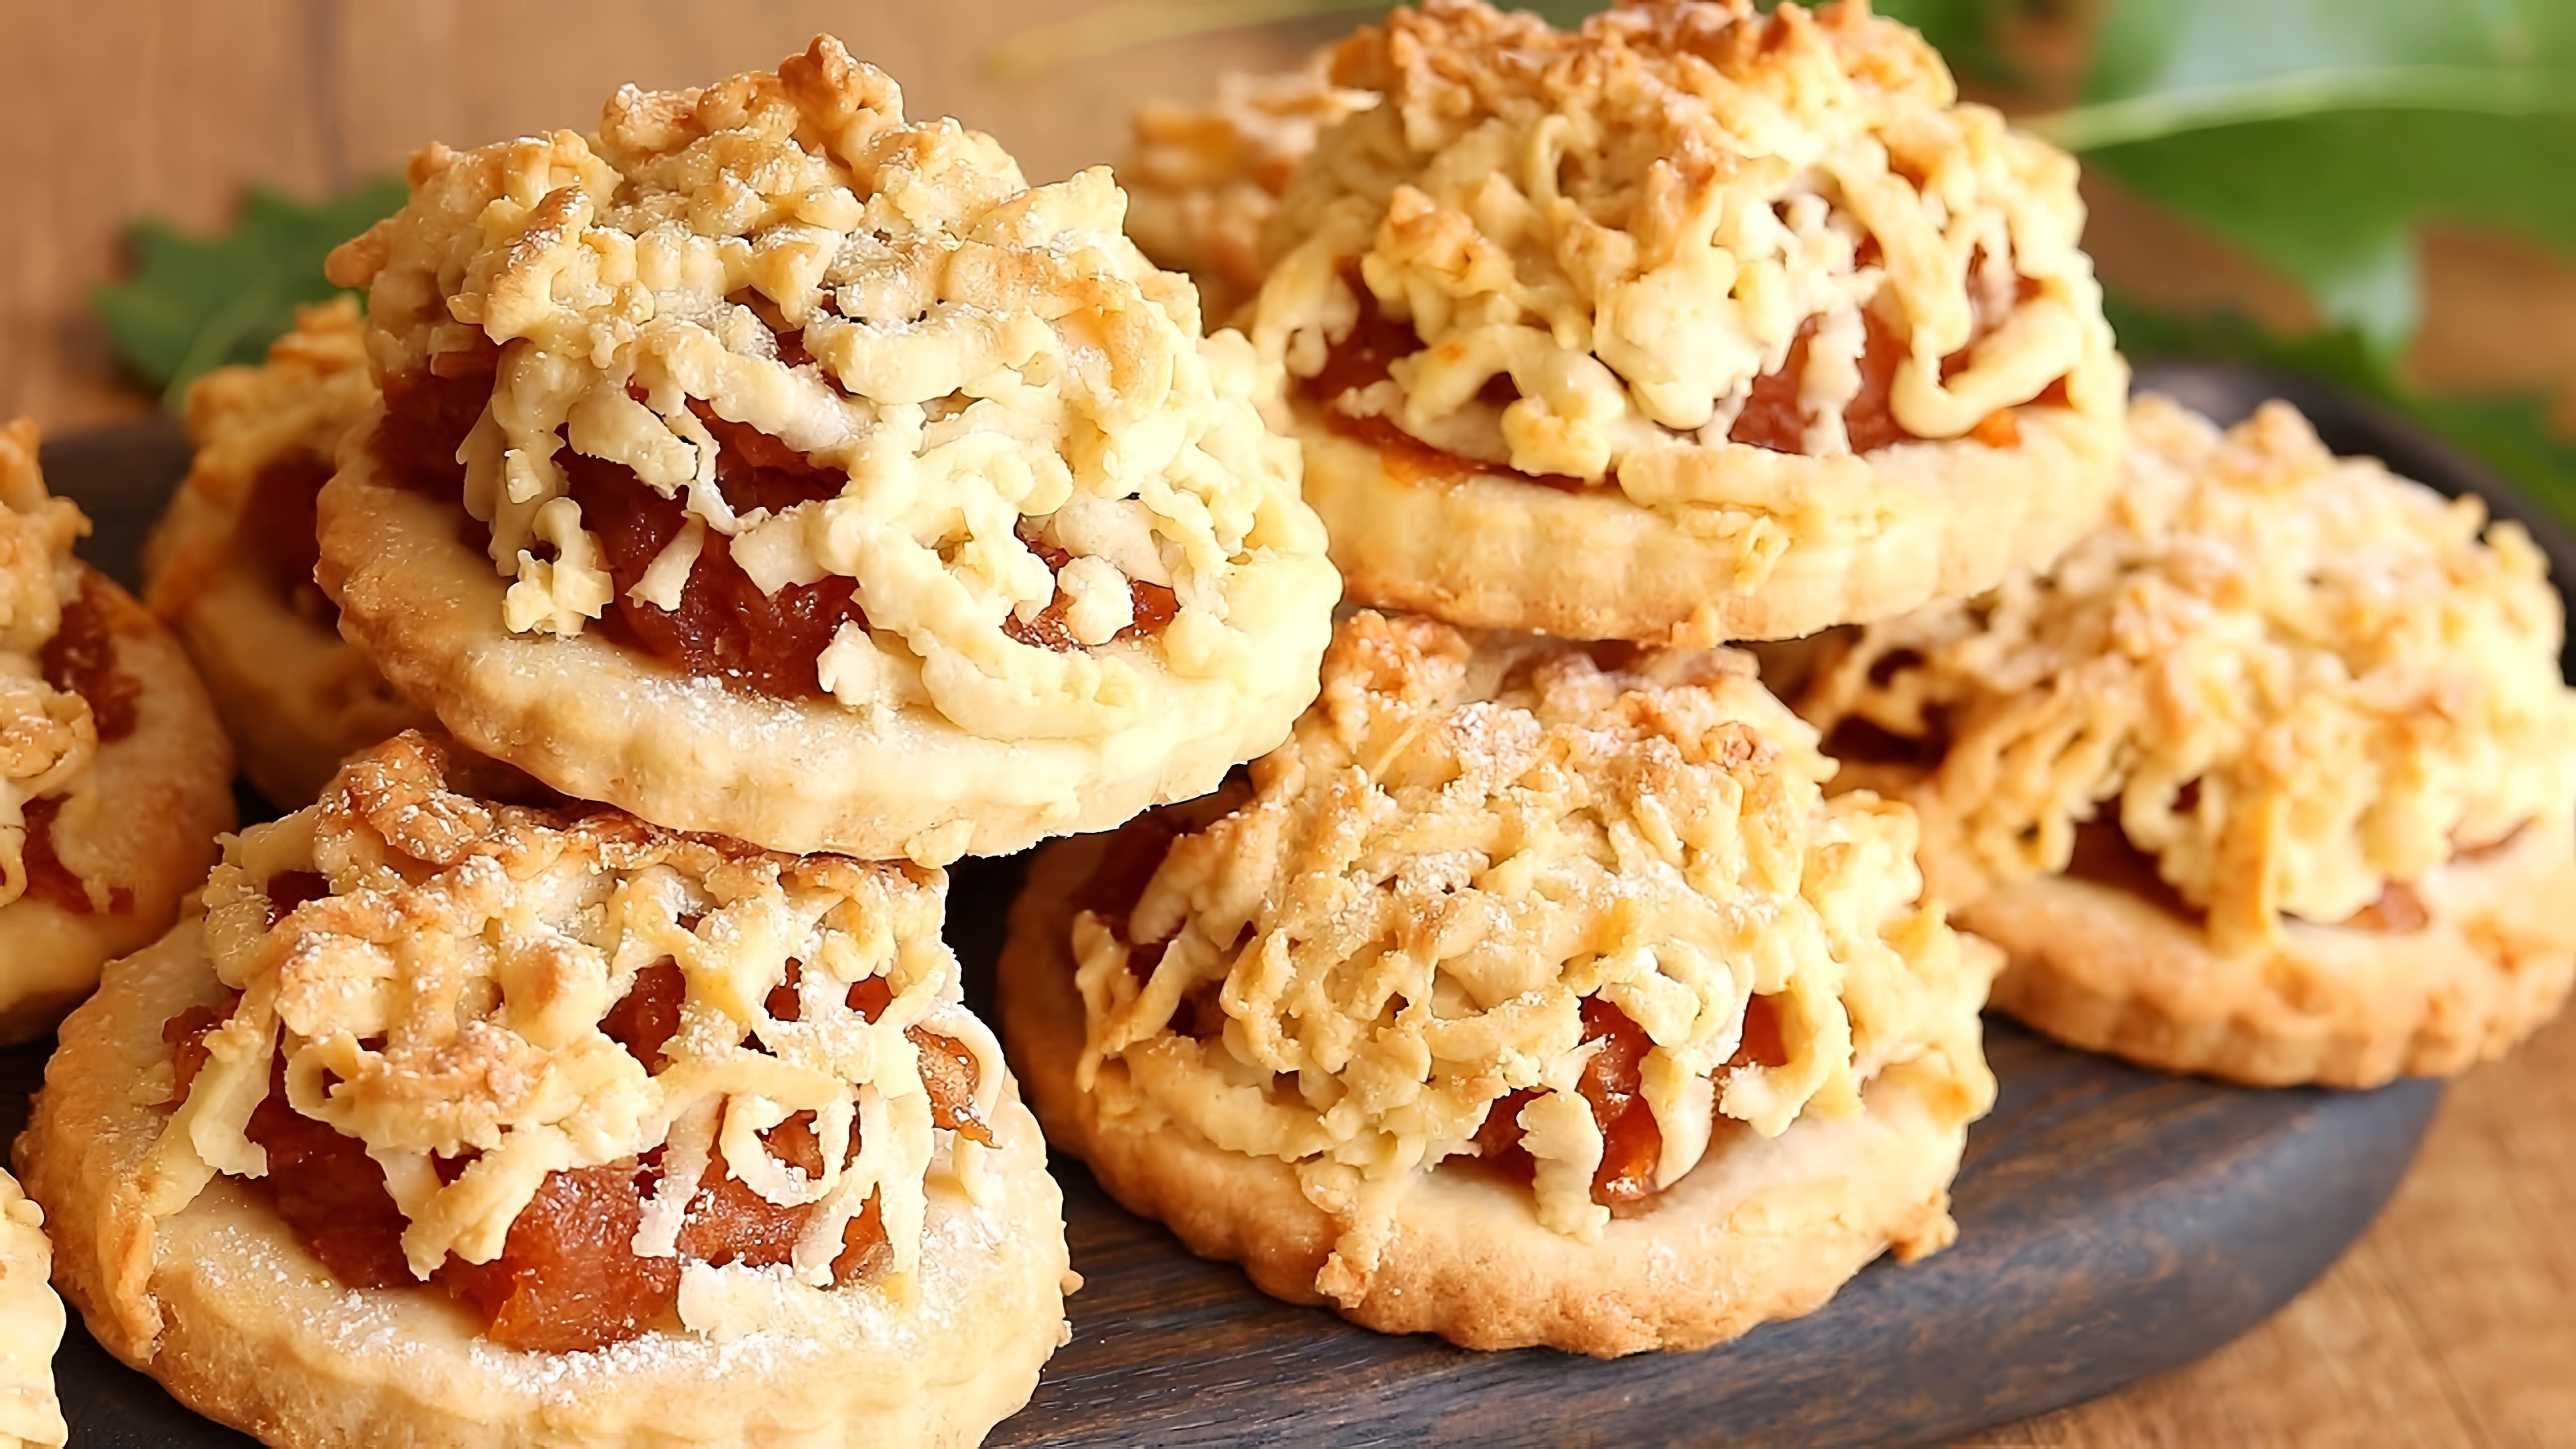 В этом видео демонстрируется рецепт приготовления печенья с яблочной начинкой